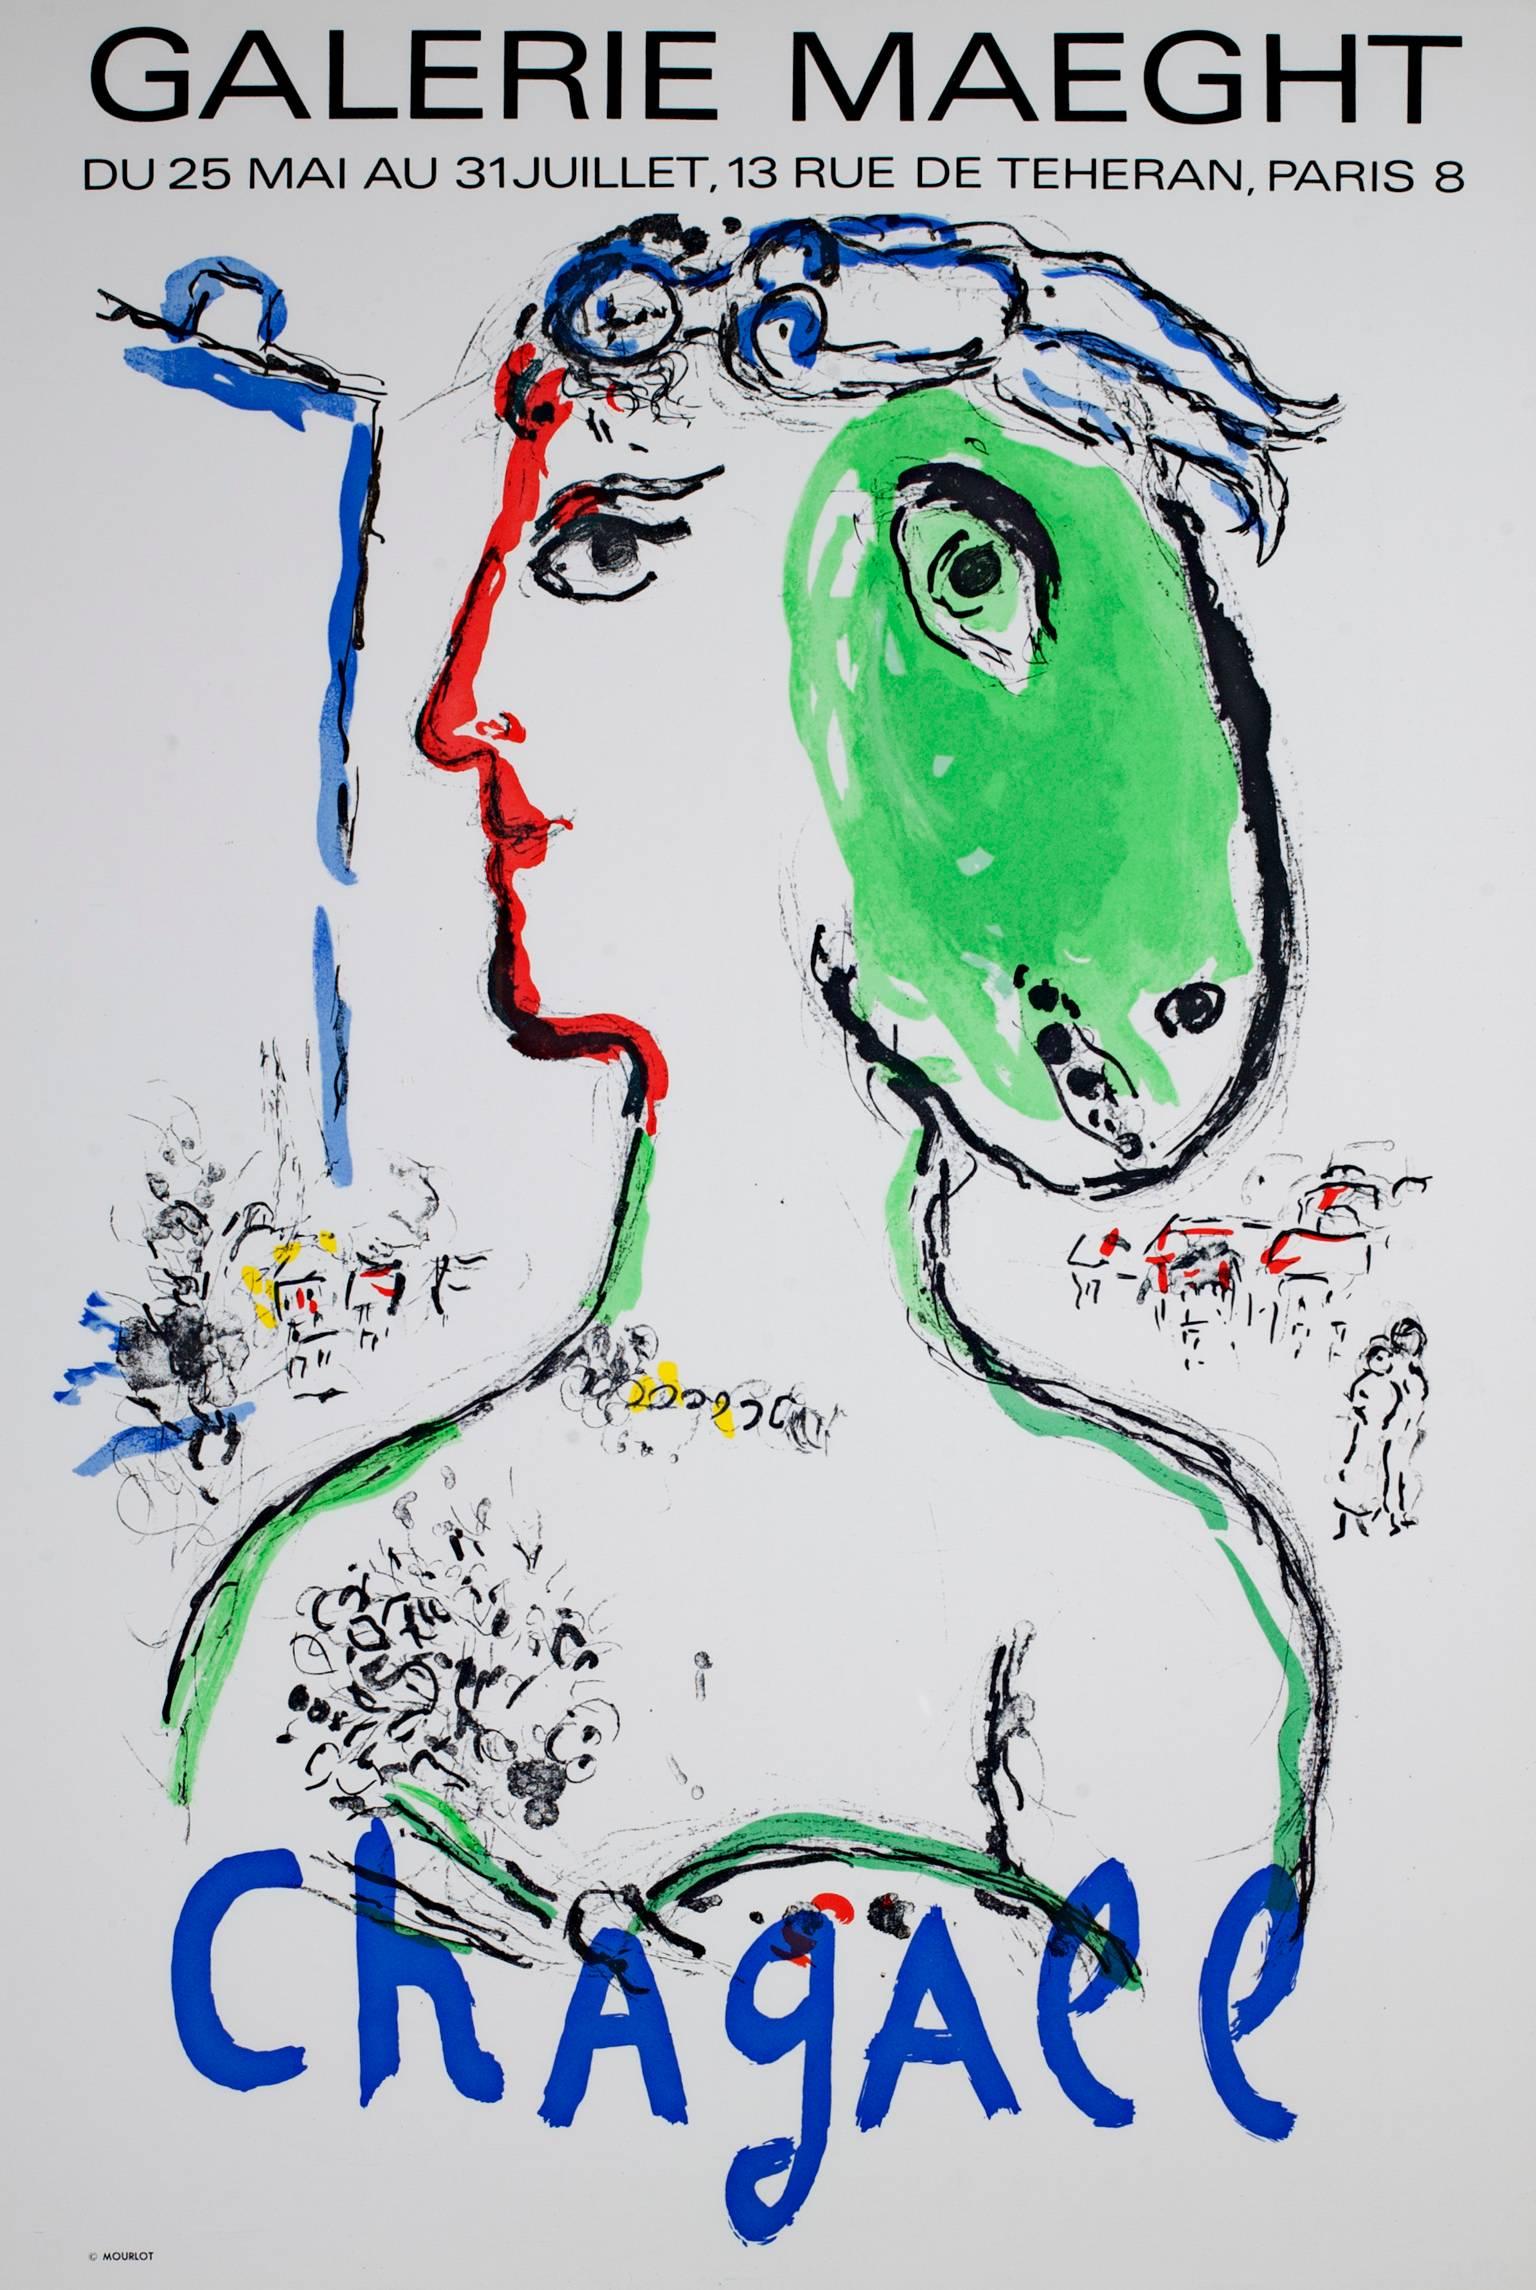 Marc Chagall "L'Artist Phoenix Poster" für die Galerie Maeght von 1972. Sie stammt aus der Auflage von 5000 Stück.

30 1/2" x 20" Kunst
40 1/2" x 32 1/4" Rahmen

Marc Chagall war ein in Russland geborener französischer Maler und Designer, der sich